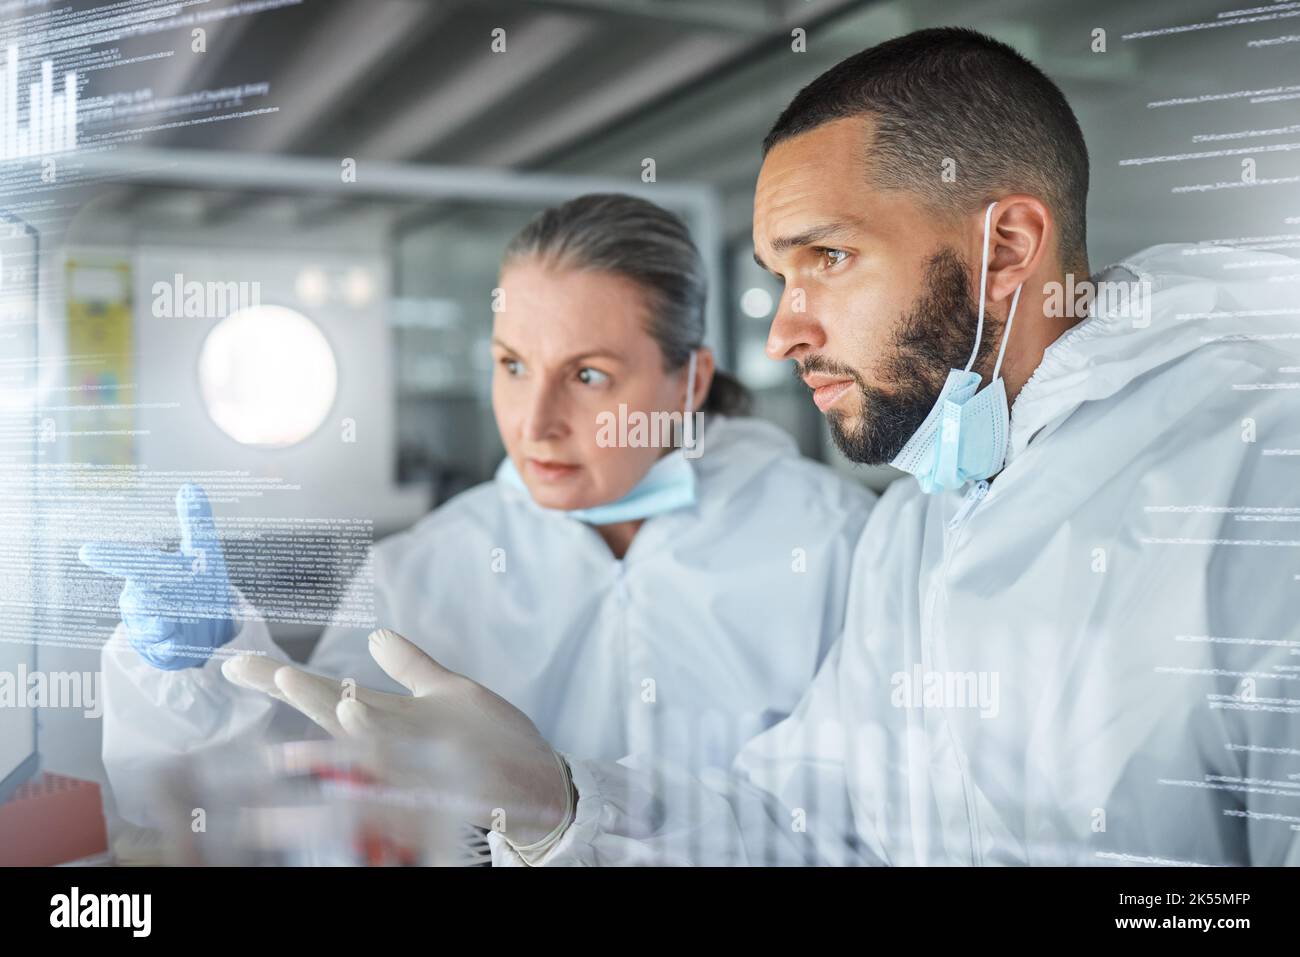 Science, technologie et recherche sur écran futuriste utilisé par les scientifiques dans un laboratoire. Innovation, transformation numérique et technologies futures dans le secteur de la santé Banque D'Images